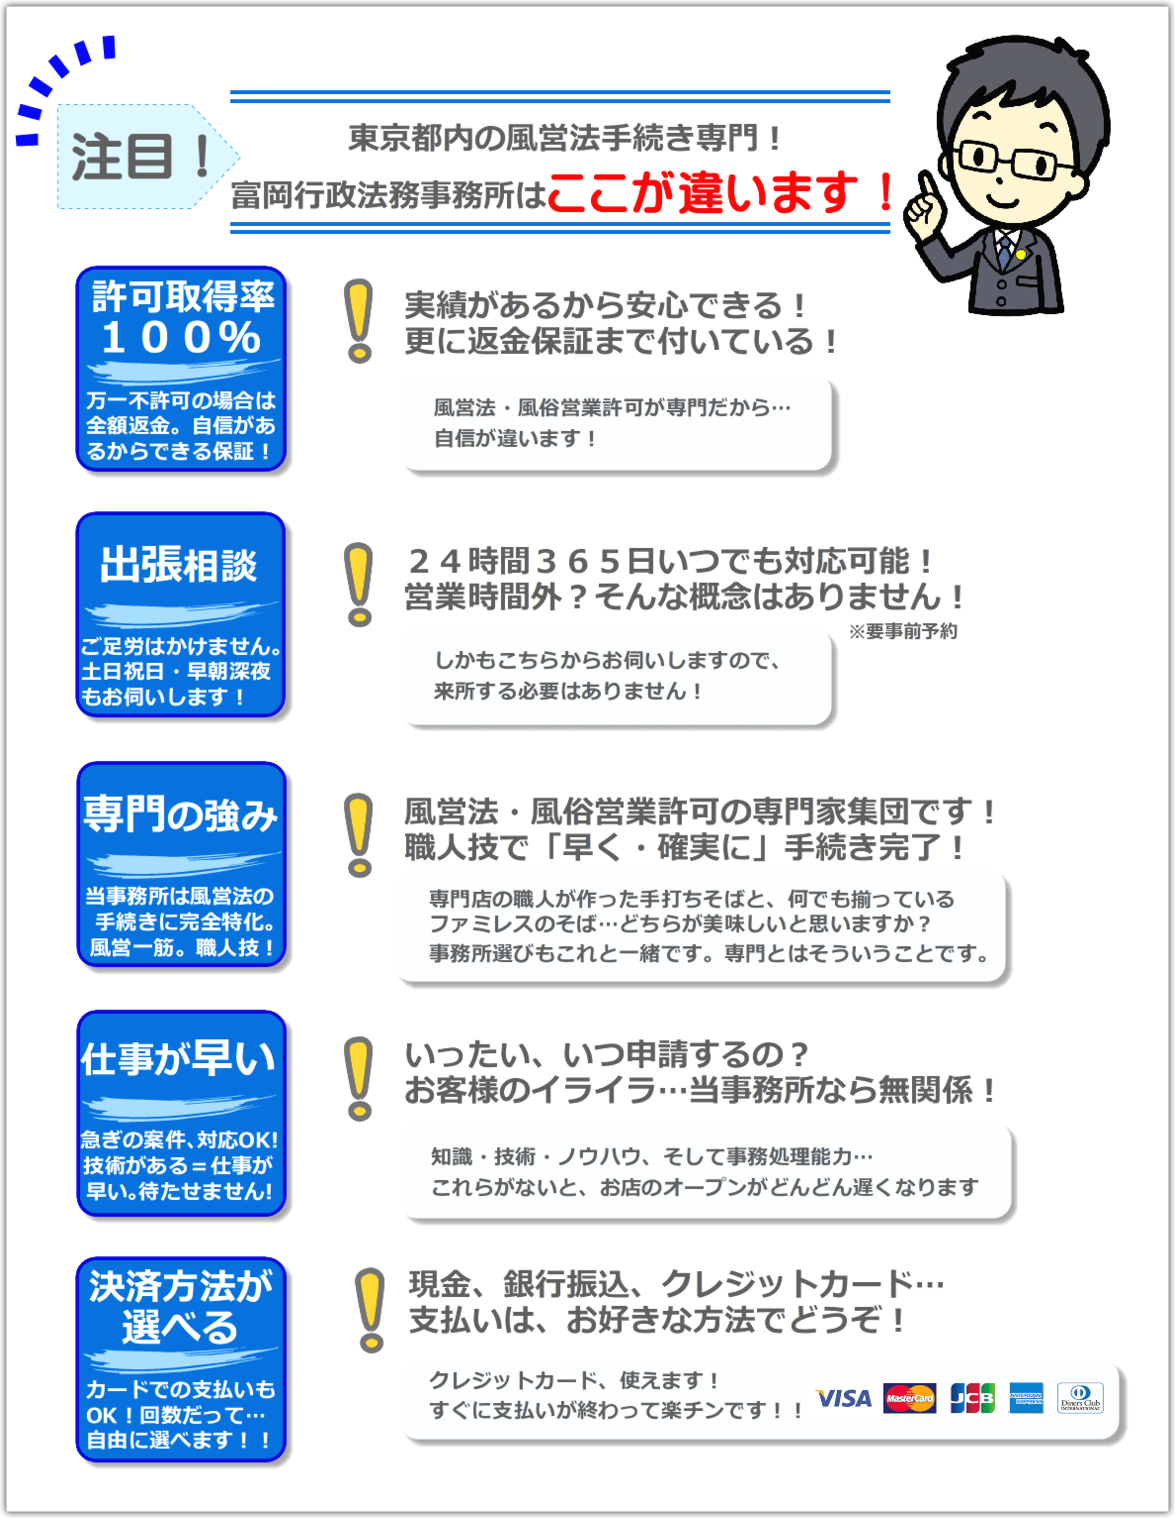 東京都内の風俗営業許可・風営法の手続き専門、富岡行政法務事務所・風営法の手続き相談センターには、他の事務所とは違う５つの特長があります。まず、実績があるから安心できます。万一不許可の場合の返金保証まで付いています。次に２４時間３６５日、いつでも対応可能です。営業時間外という概念は当事務所にはありません。そして当事務所には高い専門性があります。富岡行政法務事務所・風営法の手続き相談センターは、風営法・風俗営業許可の専門家集団です。職人技で風俗営業の許可を「早く・確実に」取得することができます。また、風営法・風俗営業許可のプロですので、仕事が早く、急ぎの案件にも対応することが可能です。最後に、決済方法が豊富で自由に選べることも特長の一つです。現金、銀行振込、クレジットカードの中からお好きな方法を選べます。クレジットカードはVISA、MASTER、JCB、AMEX、DINERSが使えます！